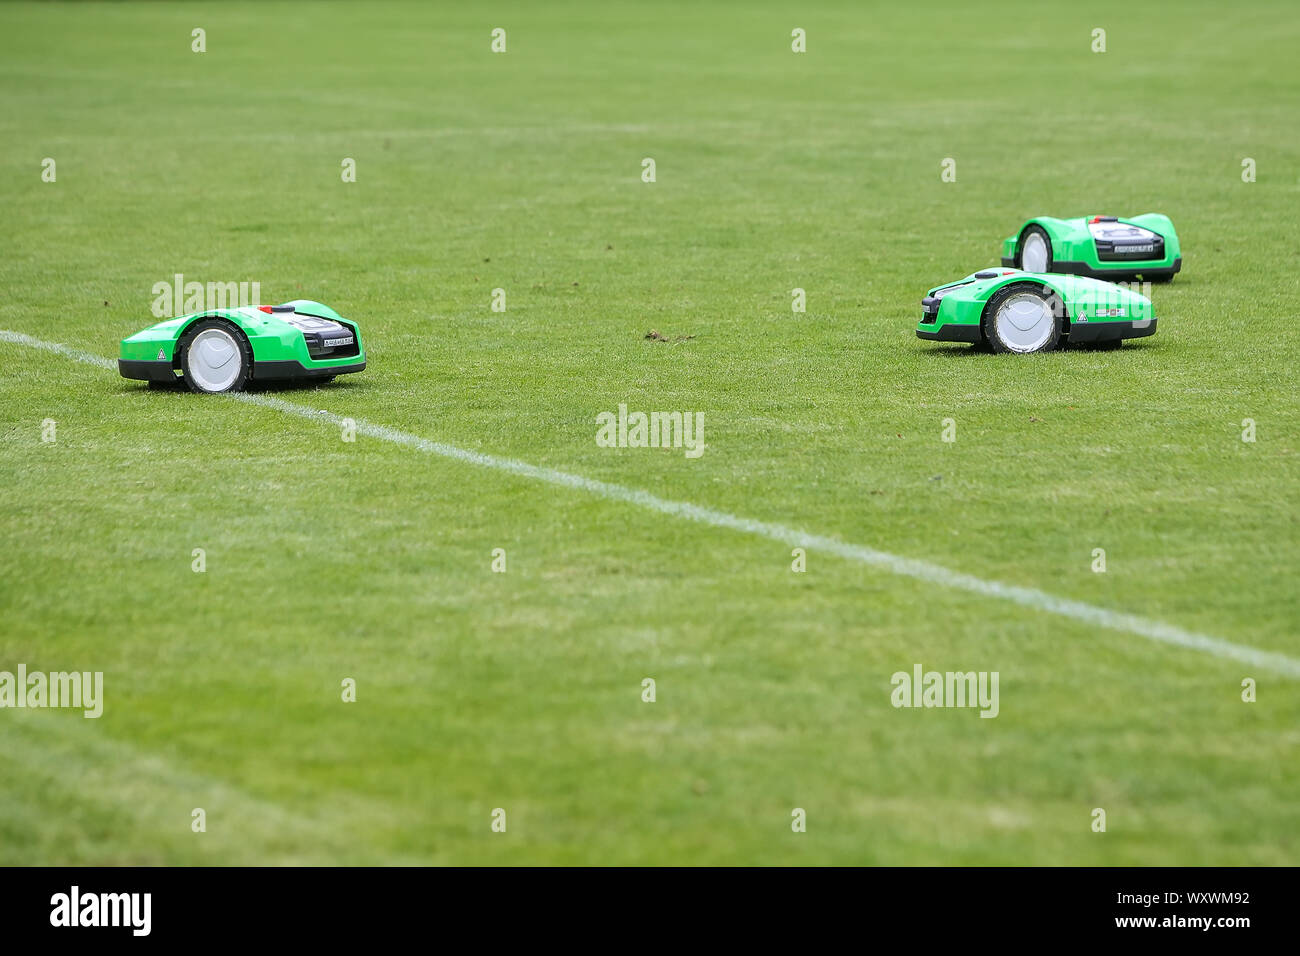 Oosterbeek, Niederlande - 11 Juli, 2018: automatische mähroboter auf grünem Gras im Stadion. Rasen mähen mit einem Roboter. Stockfoto